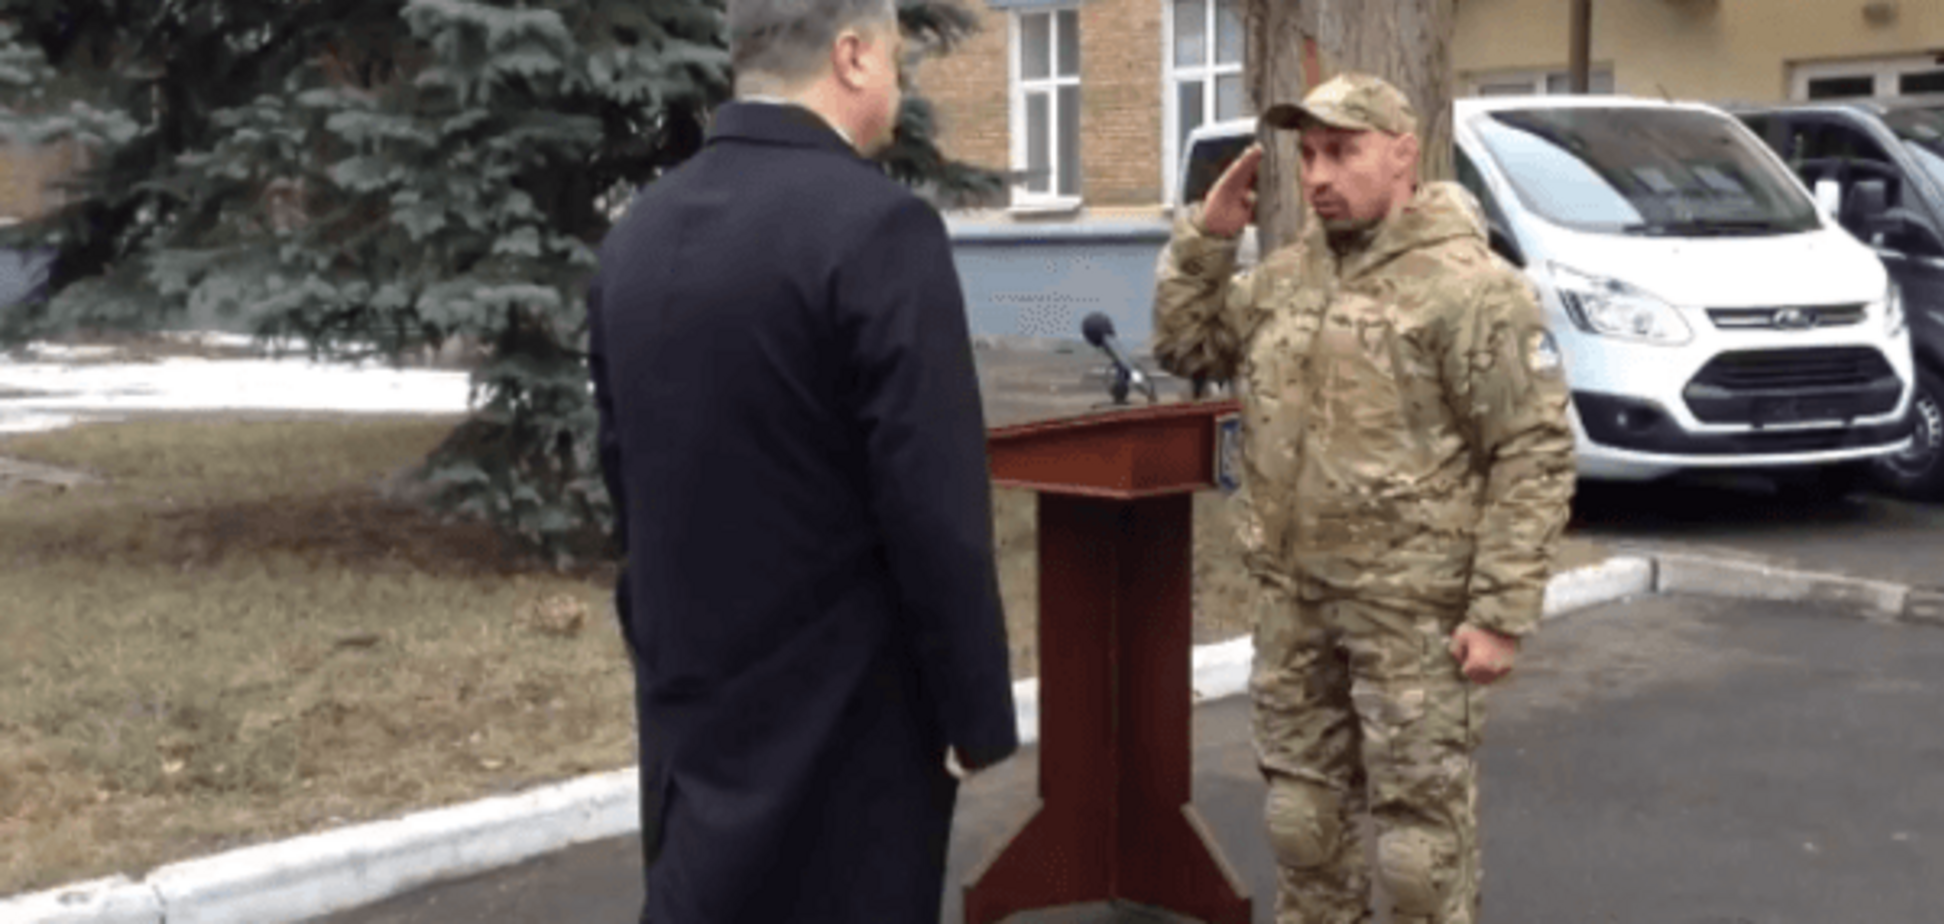 Рота спецназа НАБУ приняла присягу в присутствии Порошенко: видеофакт